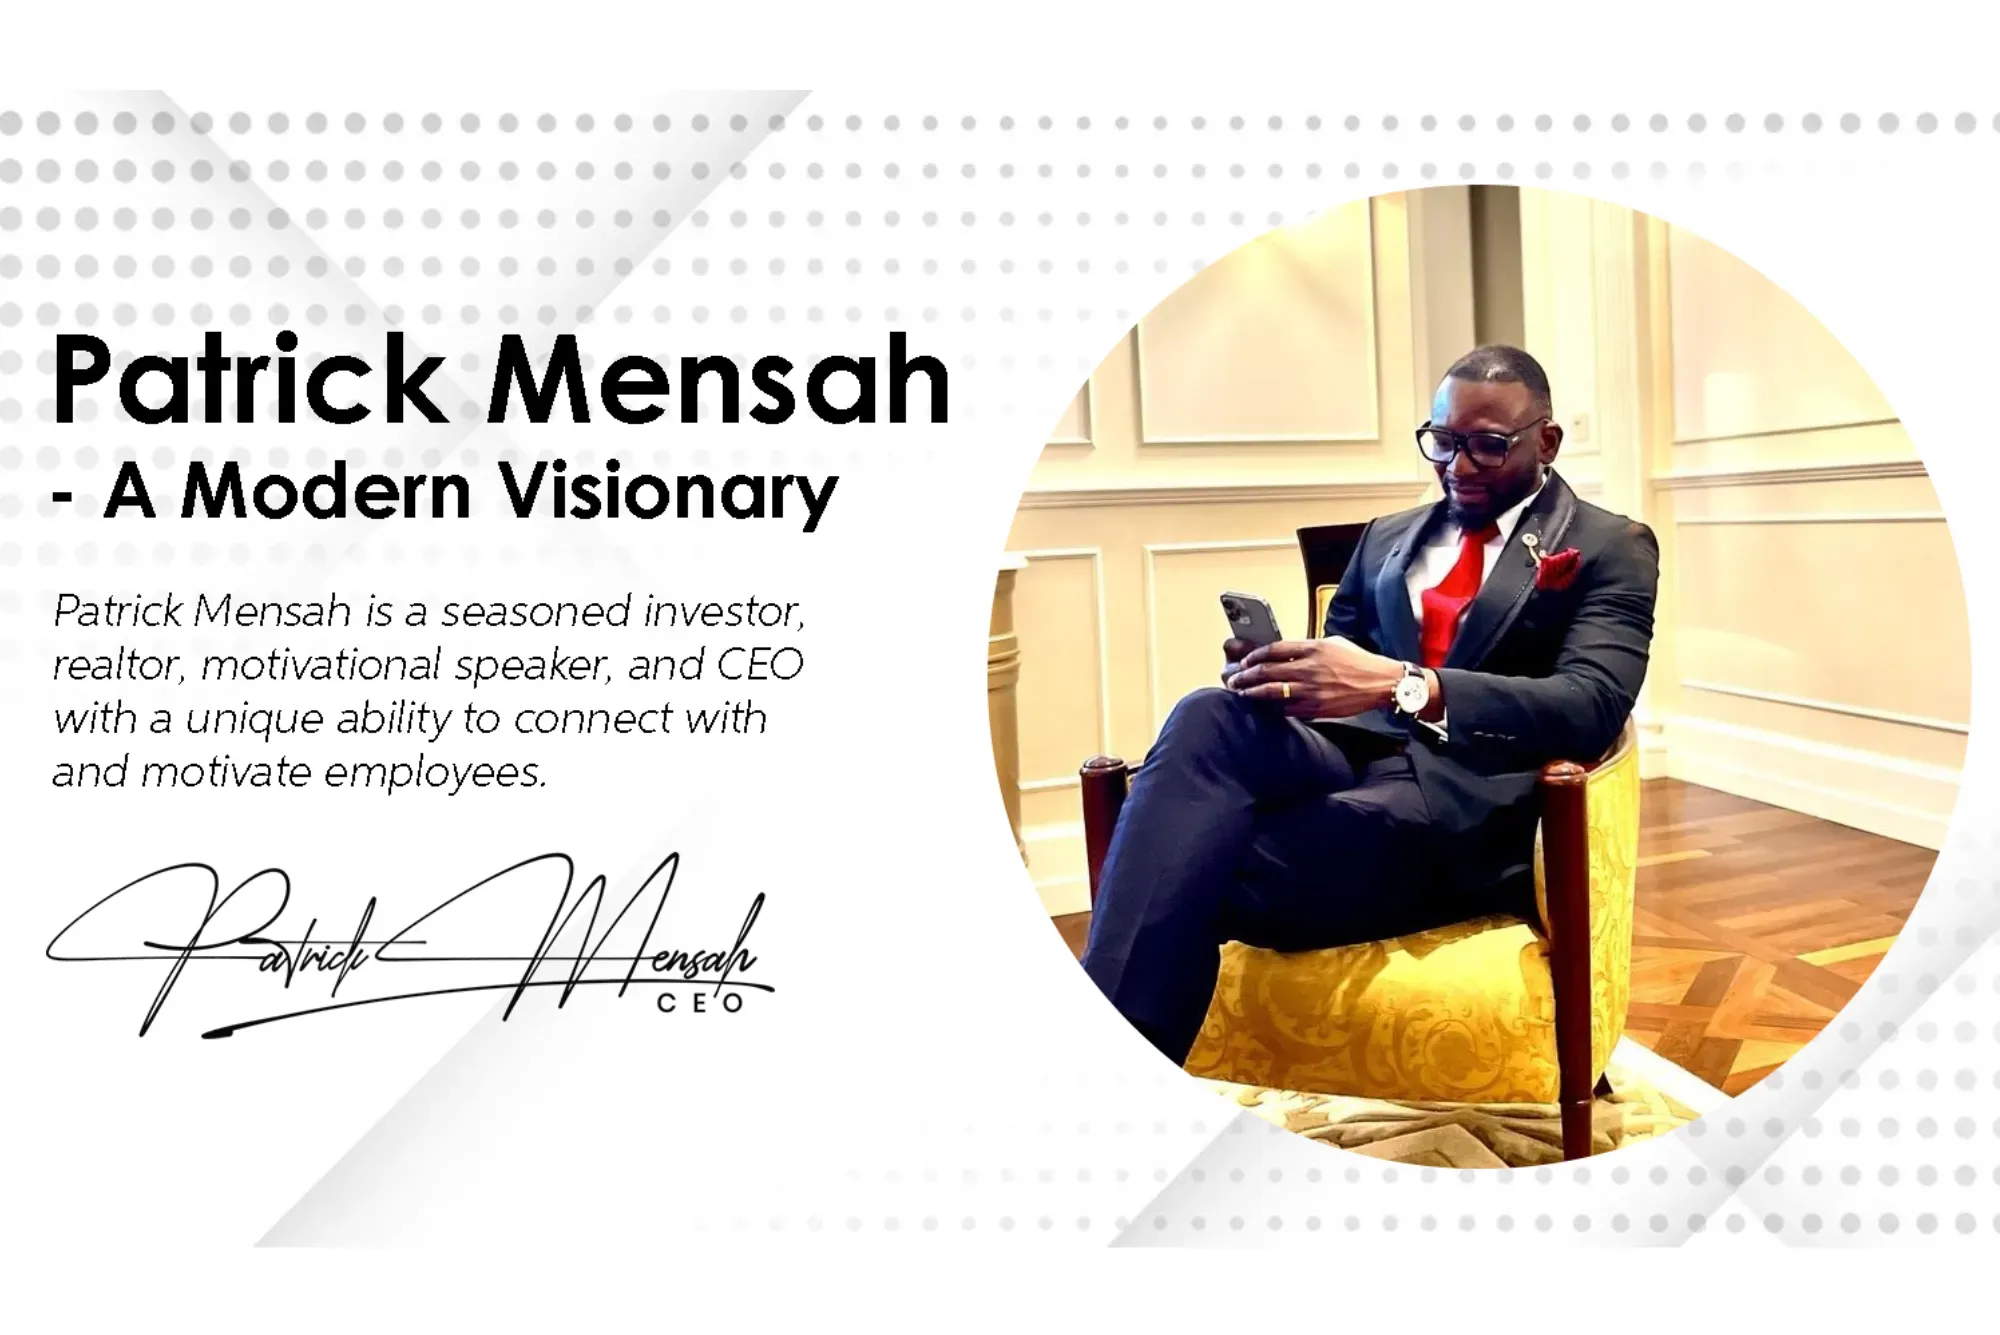 Patrick Mensah And His Legacy of Visionary Leadership